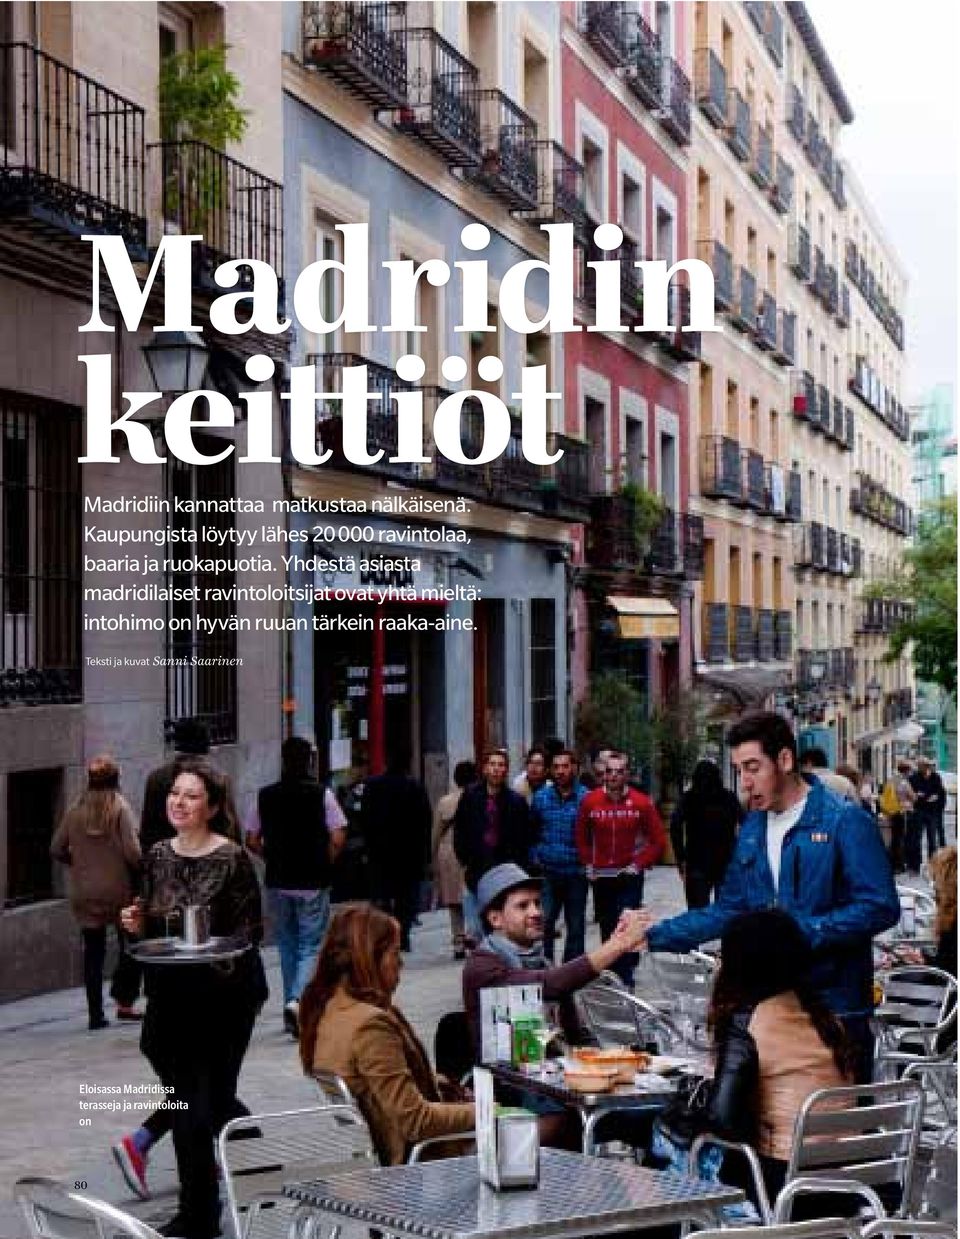 Yhdestä asiasta madridilaiset ravintoloitsijat ovat yhtä mieltä: intohimo on